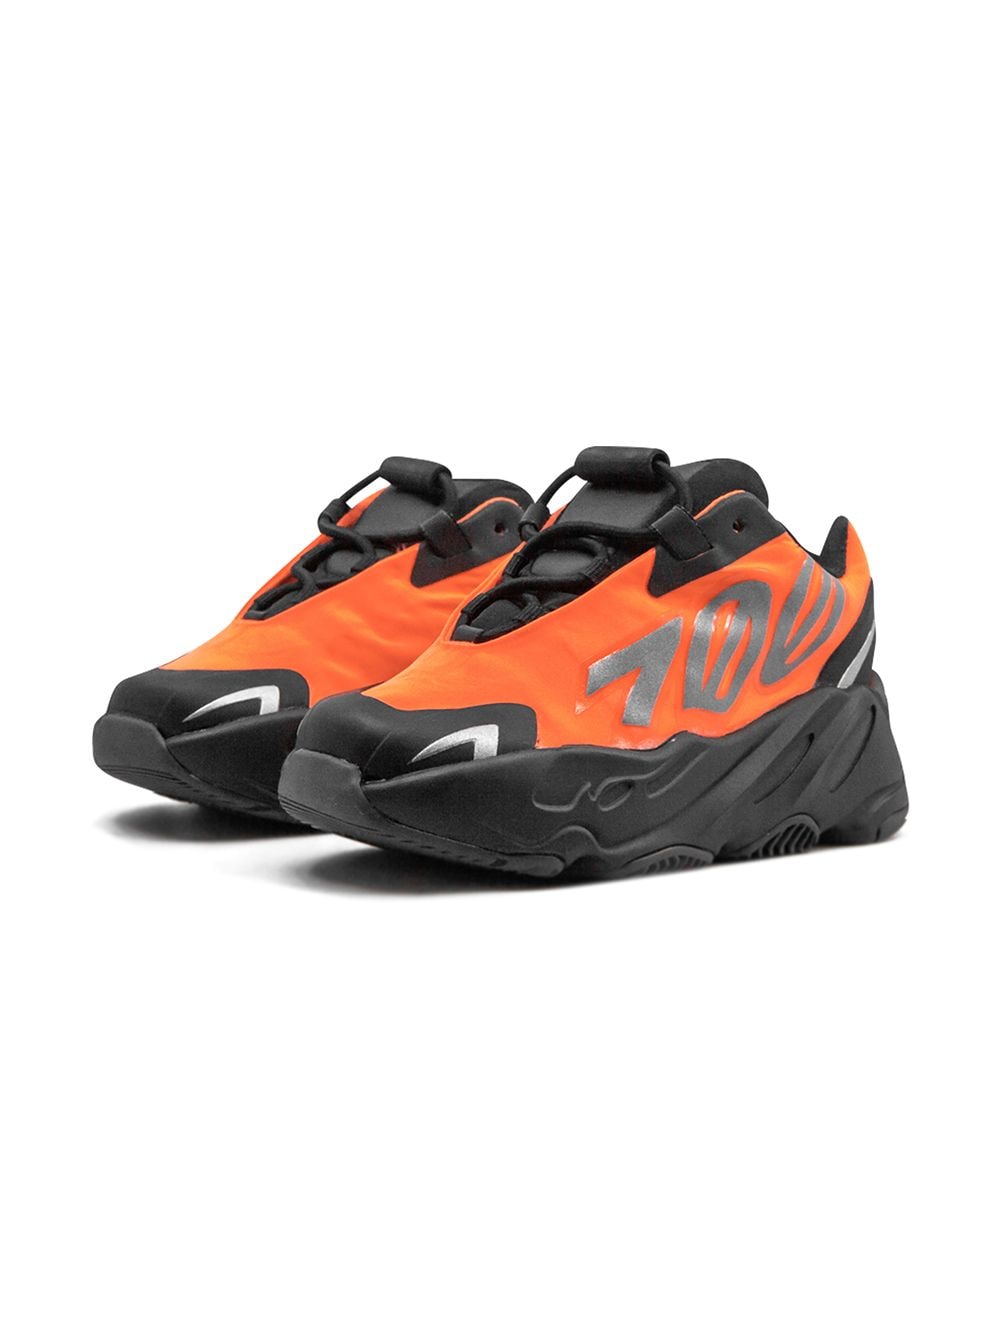 Shop Adidas Originals Yeezy Boost 700 Mnvn "orange" Sneakers